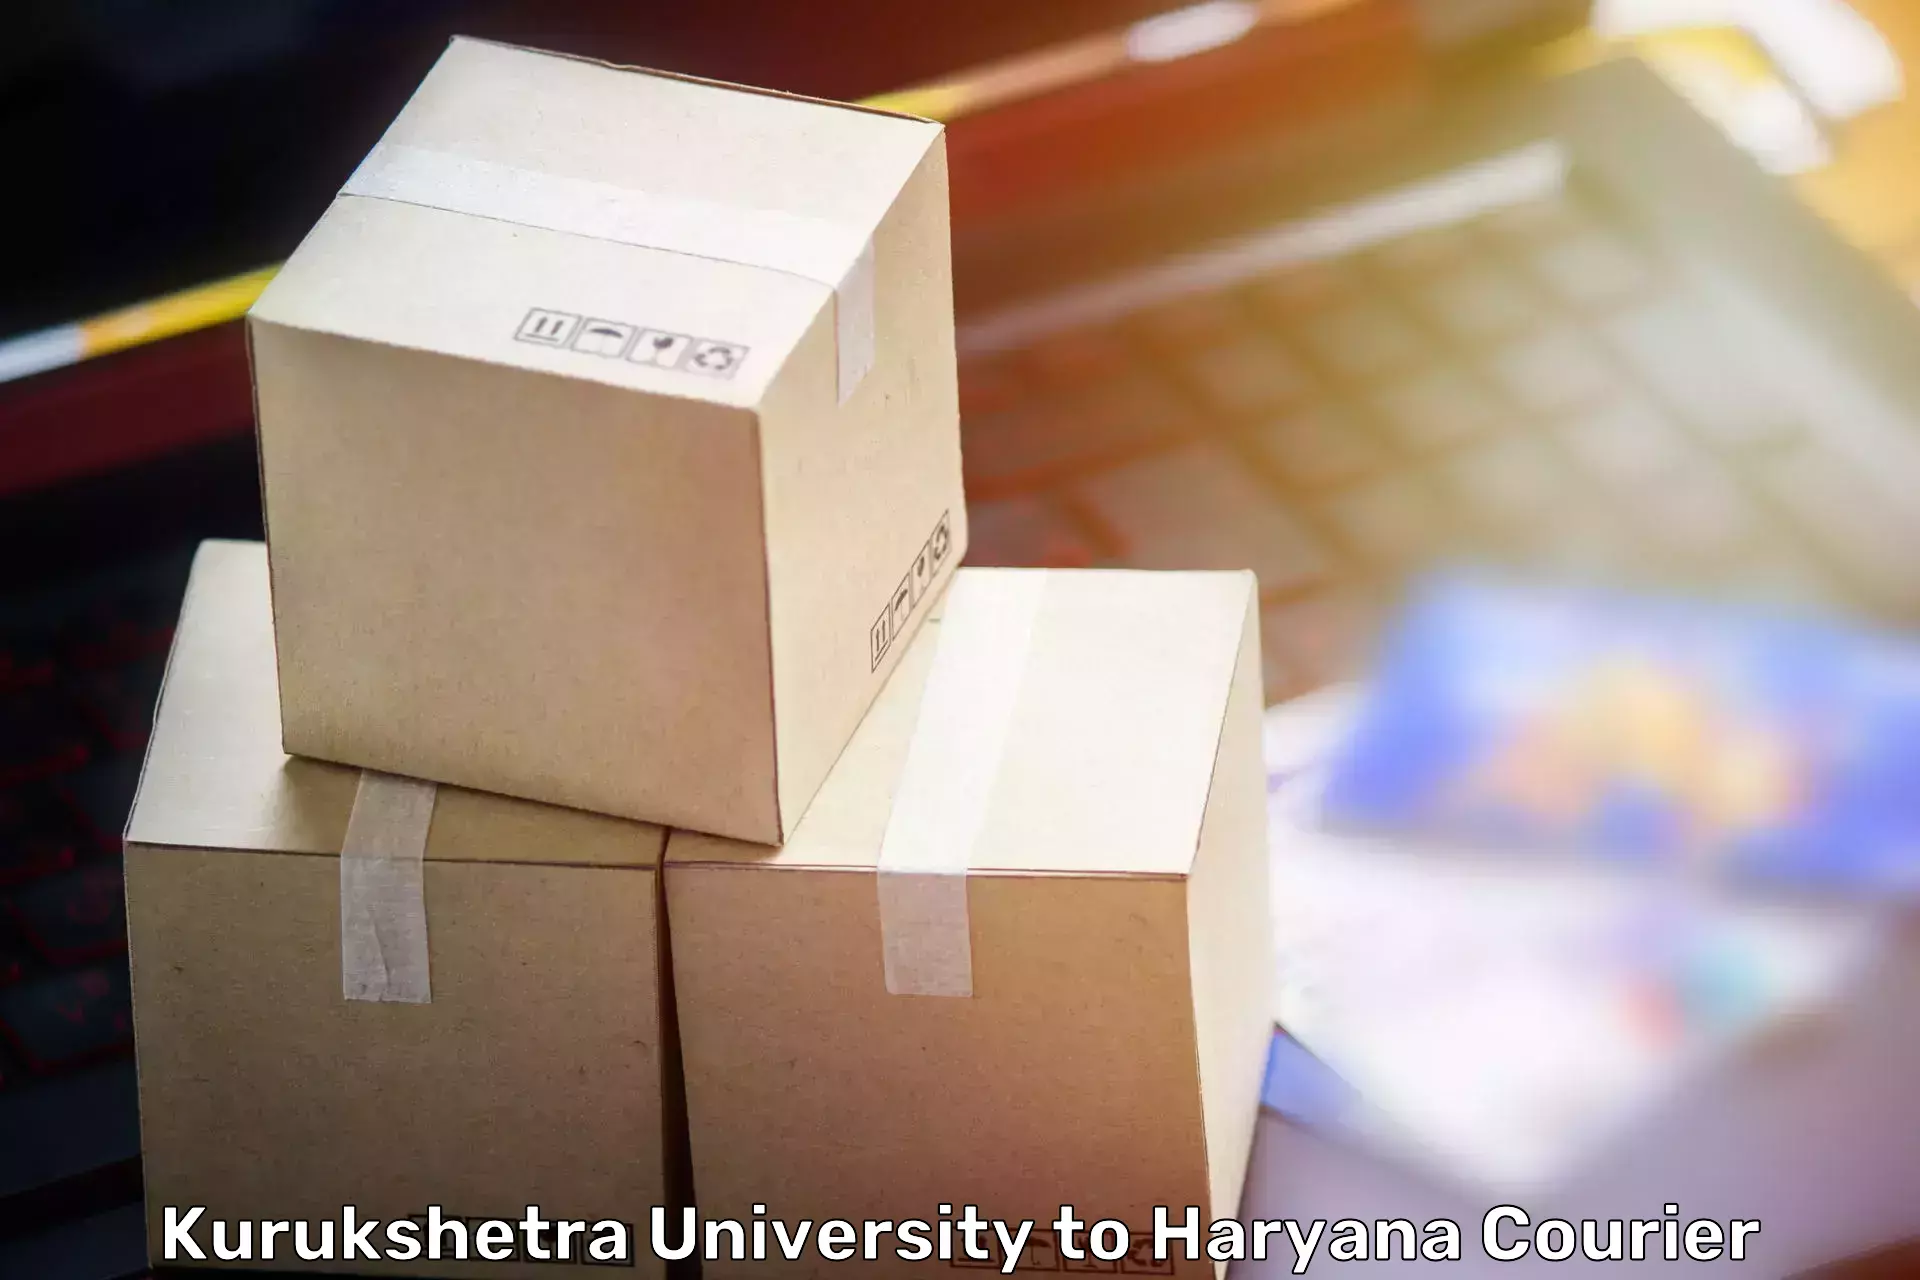 Furniture transport service Kurukshetra University to Pinjore